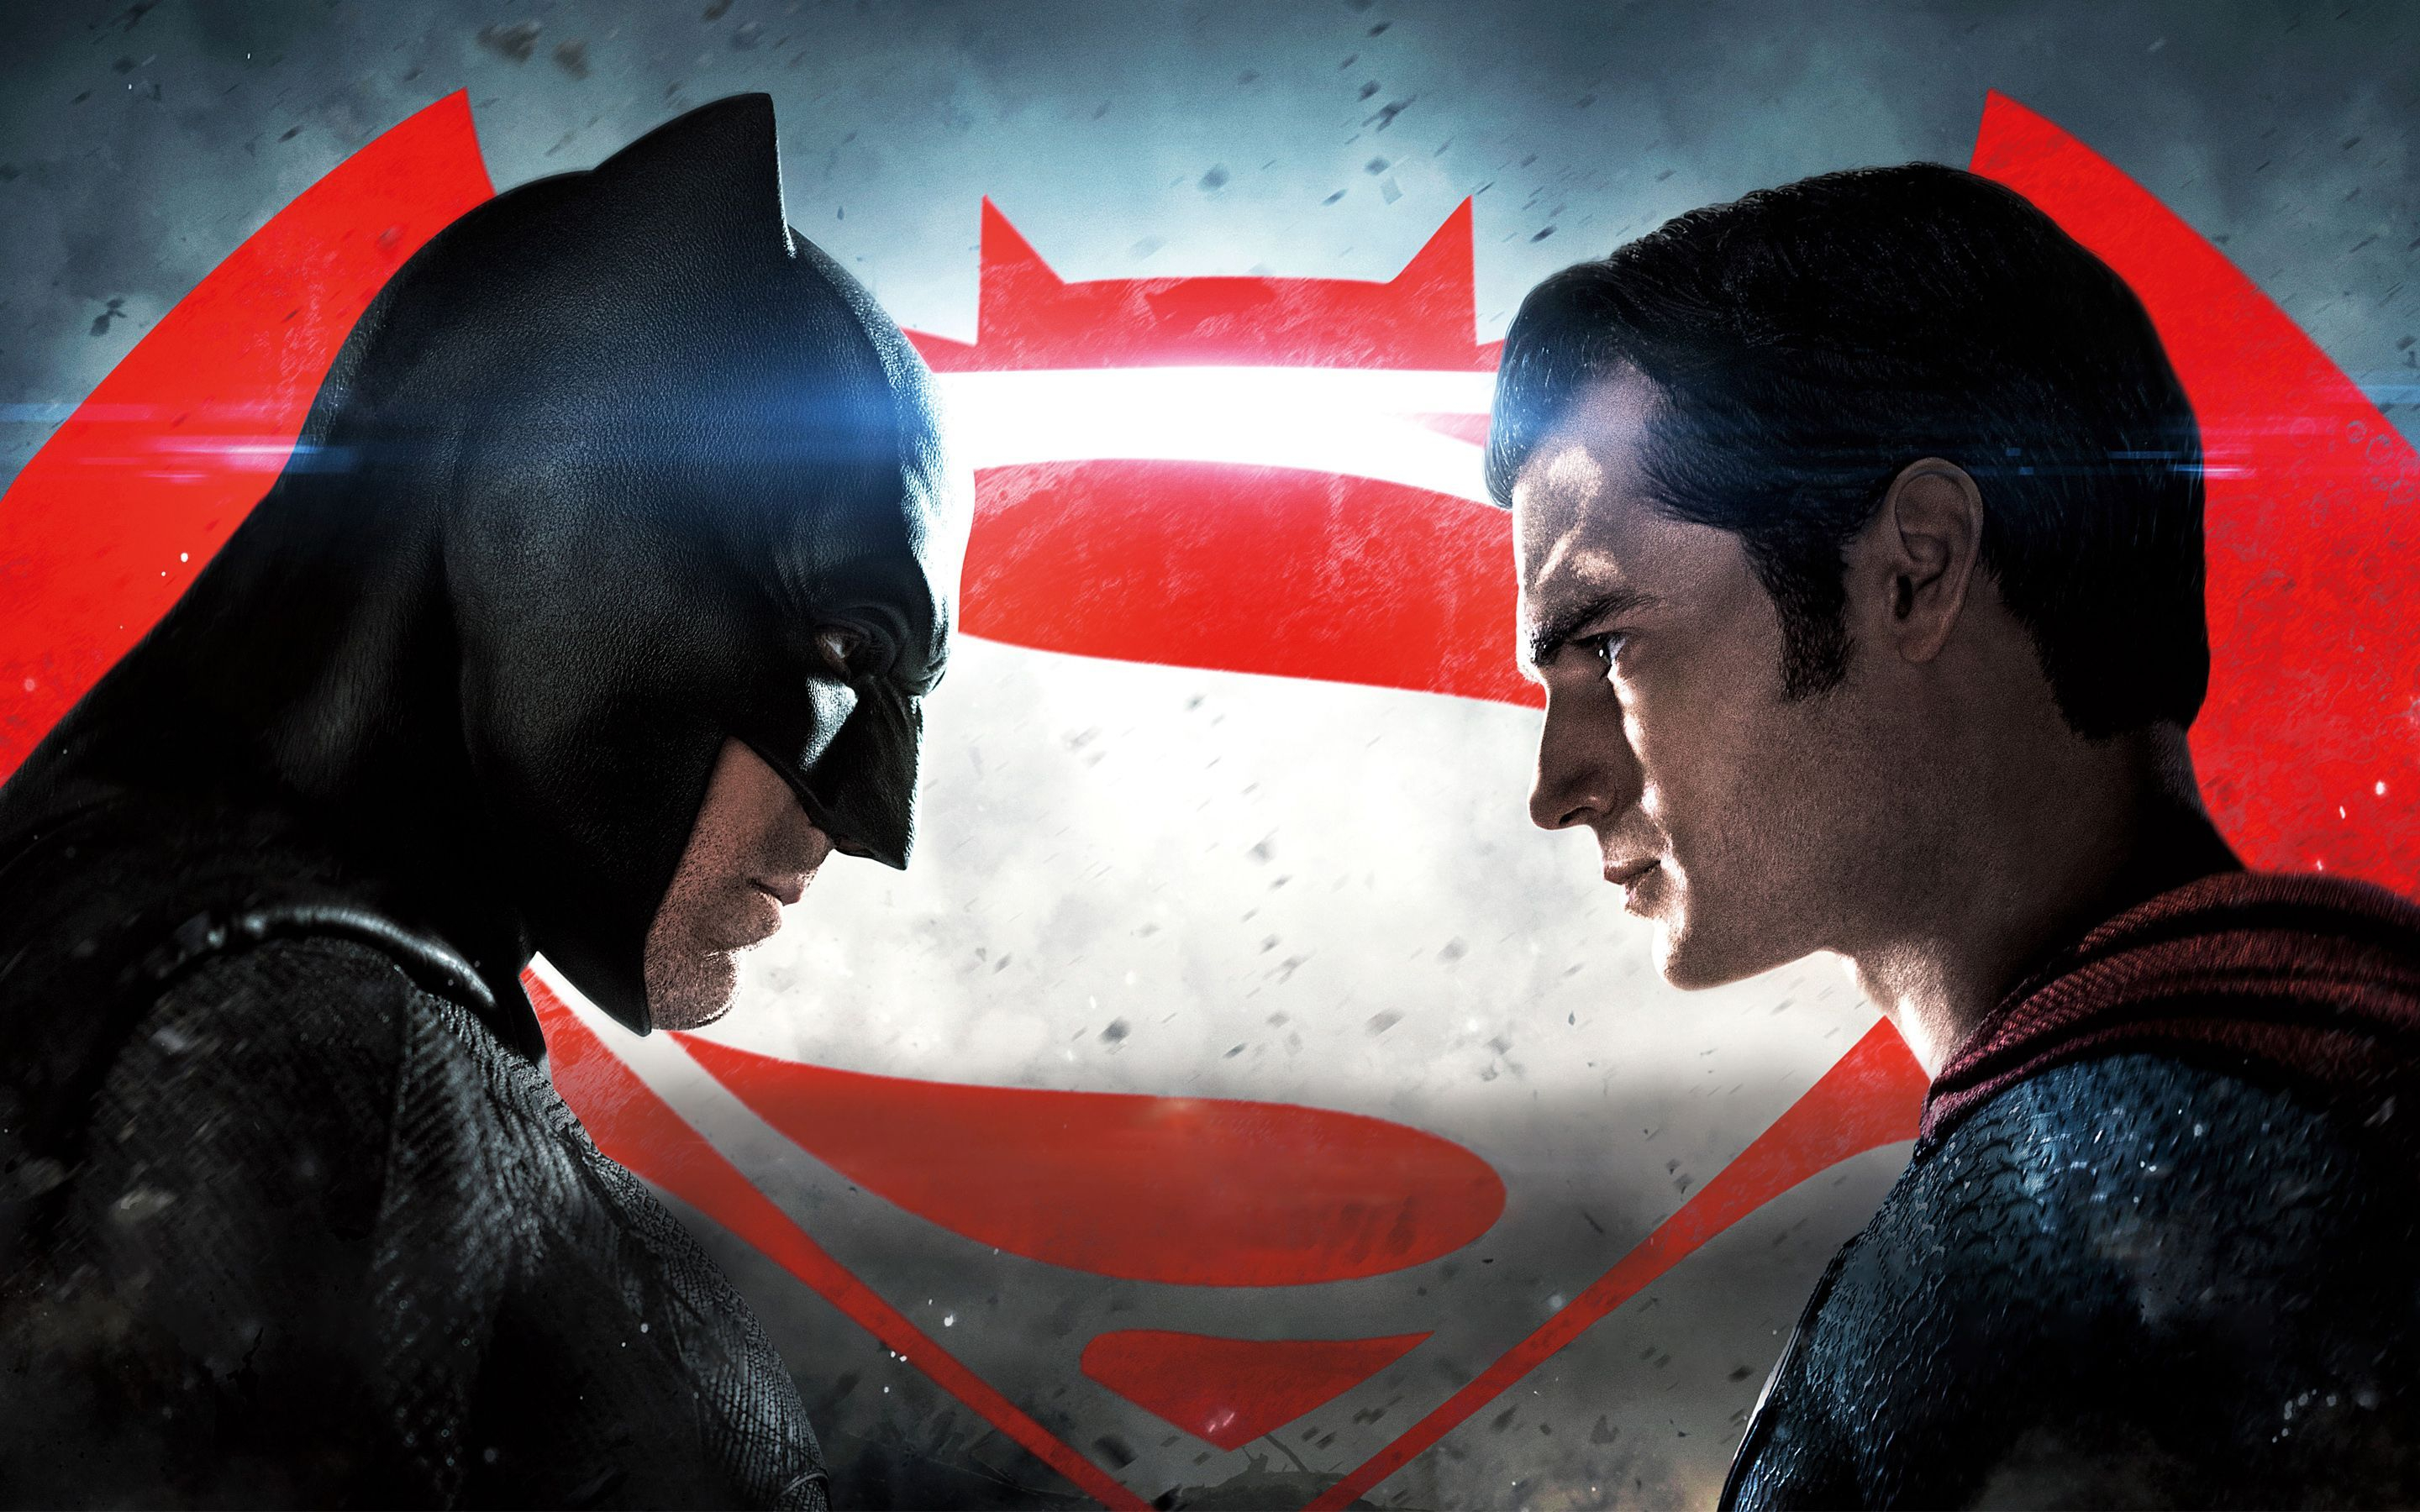 2880x1800 Superman vs Batman Wallpapers Top Free Superman vs Batman Backgrounds